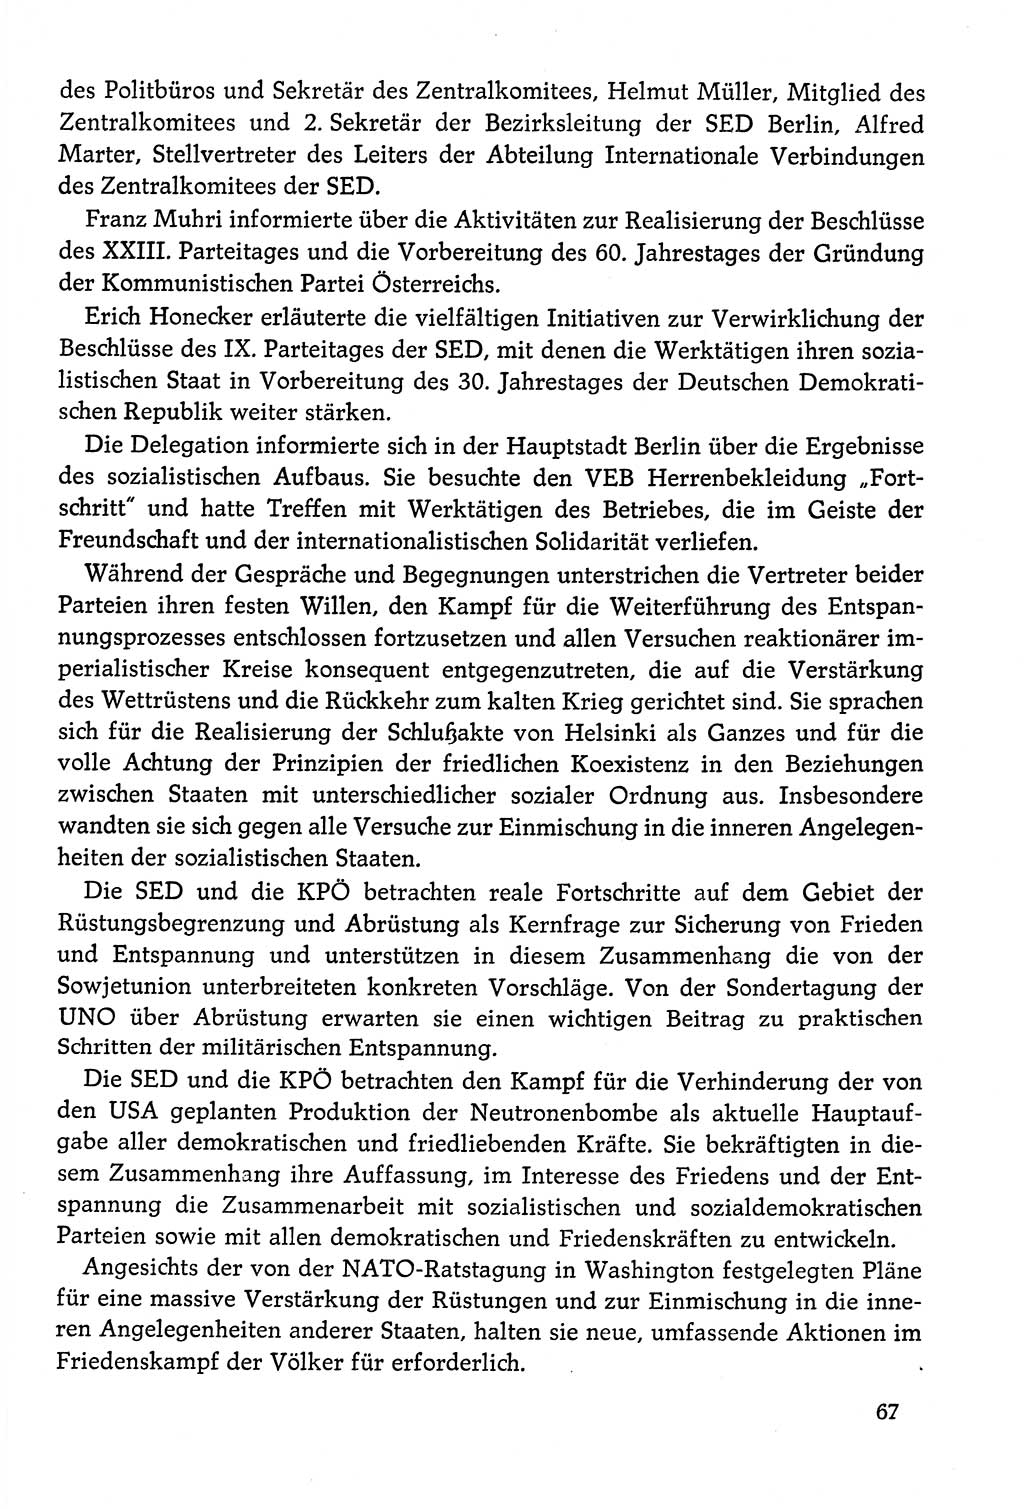 Dokumente der Sozialistischen Einheitspartei Deutschlands (SED) [Deutsche Demokratische Republik (DDR)] 1978-1979, Seite 67 (Dok. SED DDR 1978-1979, S. 67)